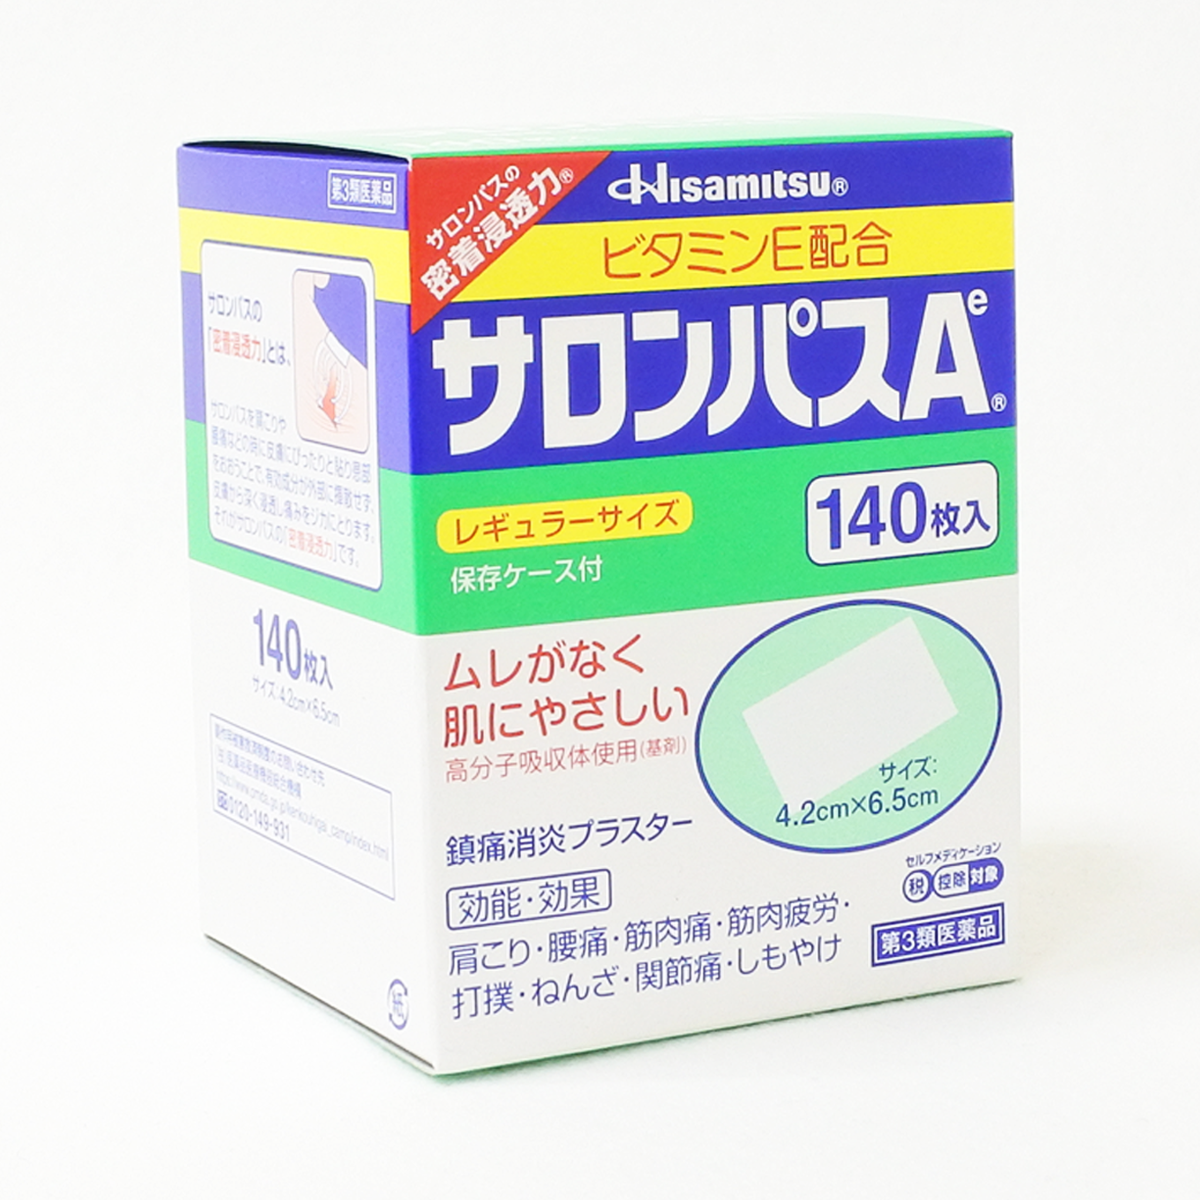 【第3类医药品】久光制药 撒隆巴斯酸痛贴布AE 140片